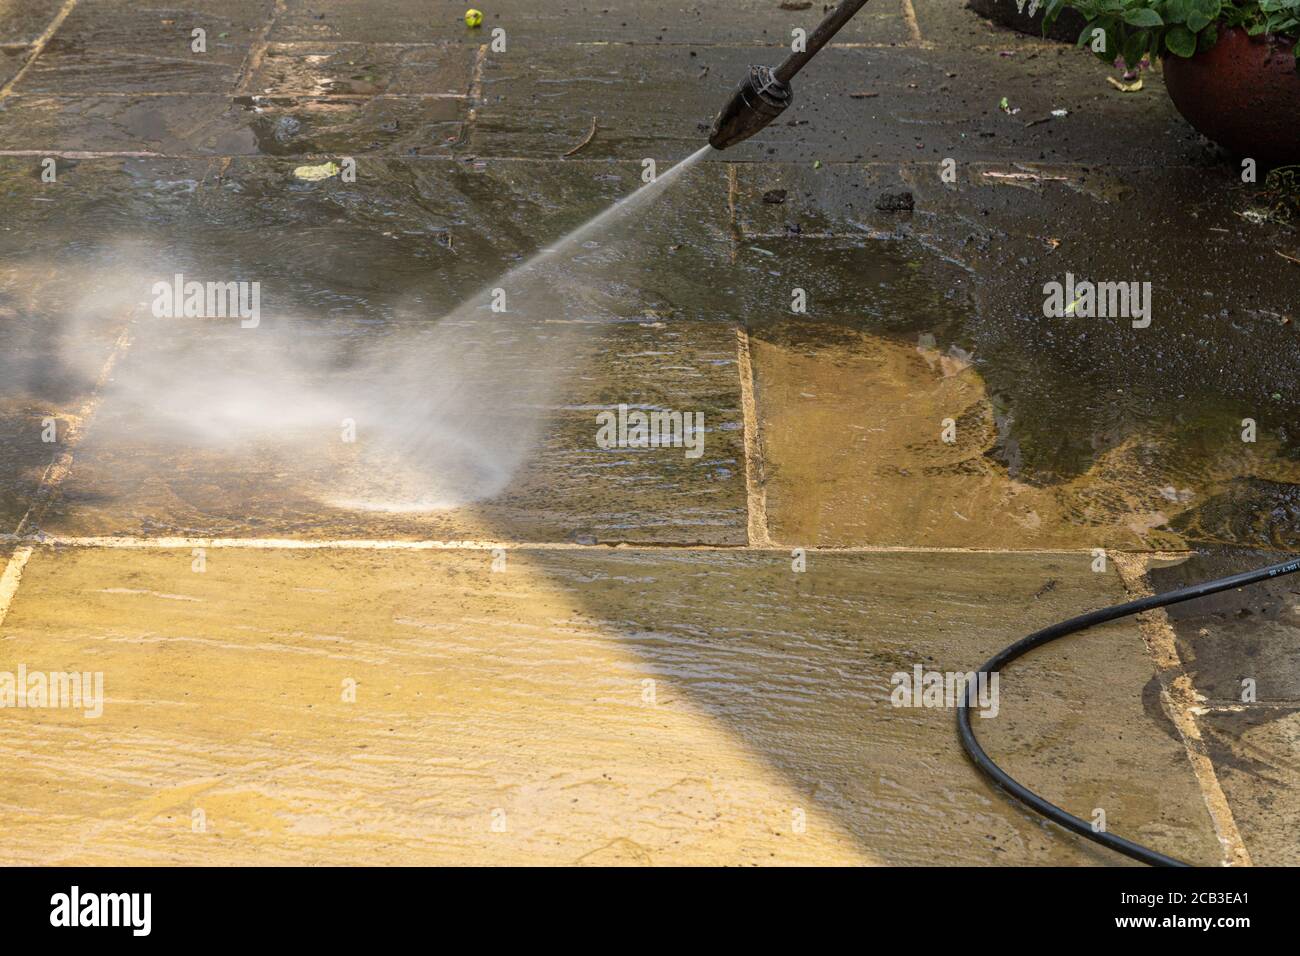 Reinigung Der Terrasse. Druckwäsche auf einer indischen Schieferterrasse. Stockfoto